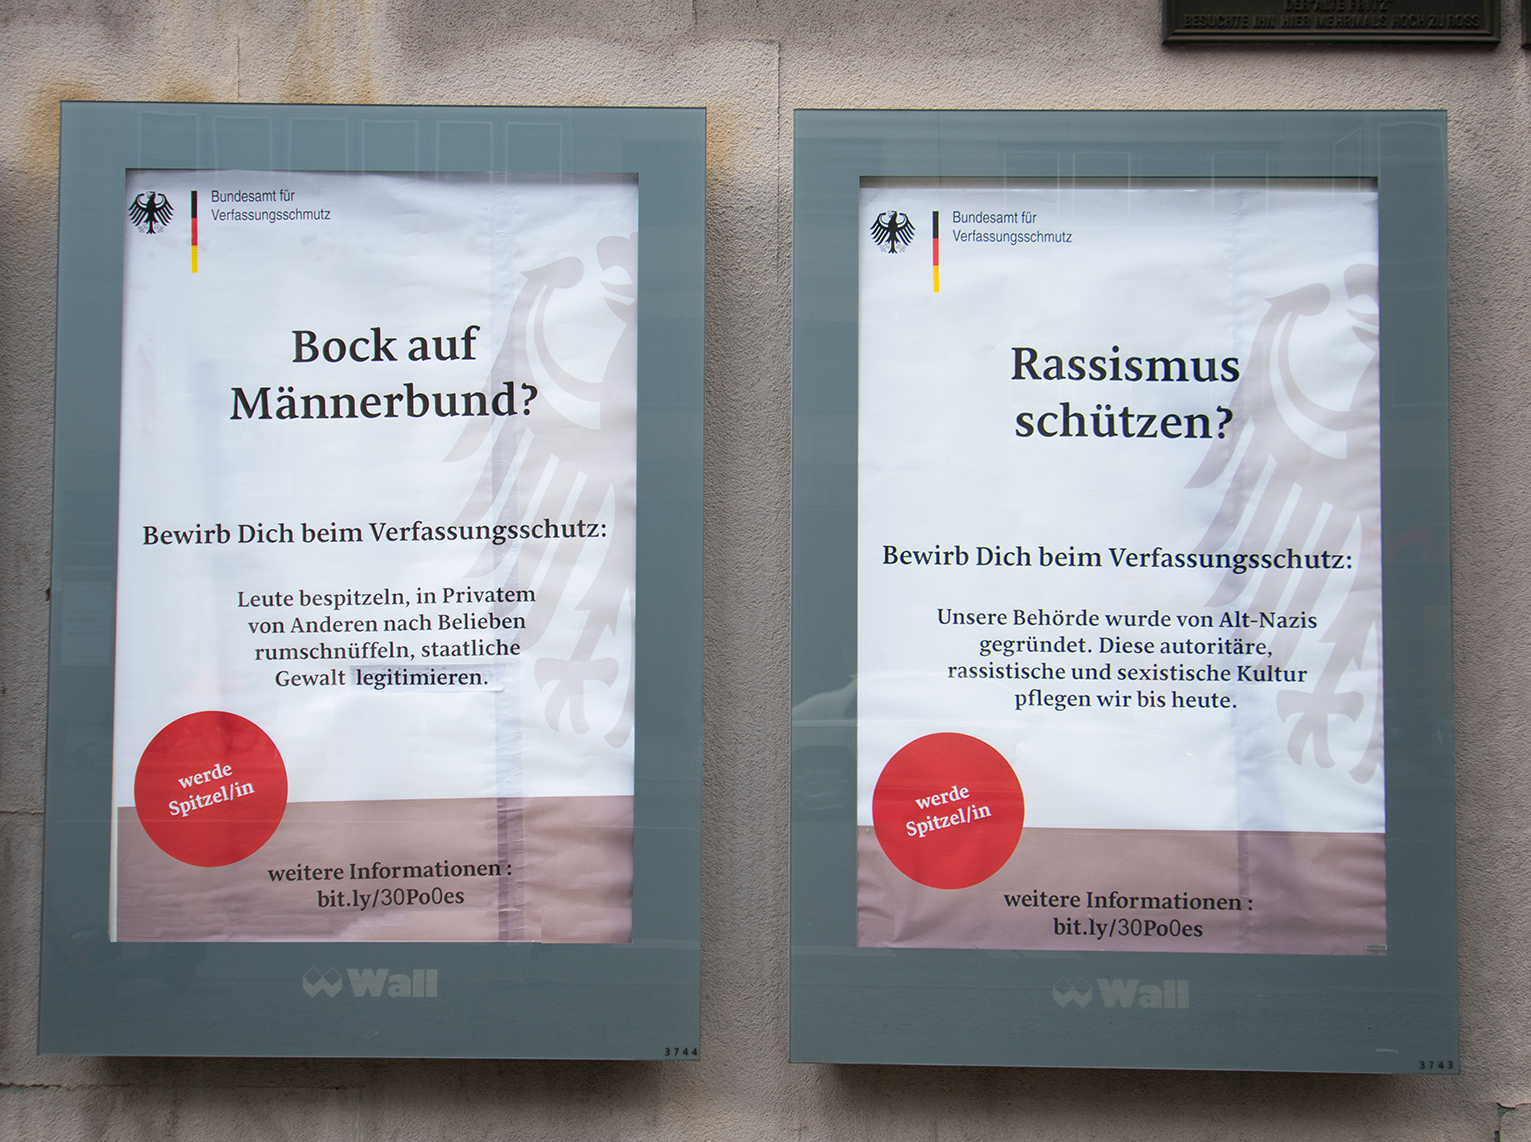 Auf dem Foto sind zwei vermeintliche Werbeplakate des Verfassungsschutzes zu sehen, die den "Männerbund" und rassistische Strukturen im Verfassungsschutz anprangern.